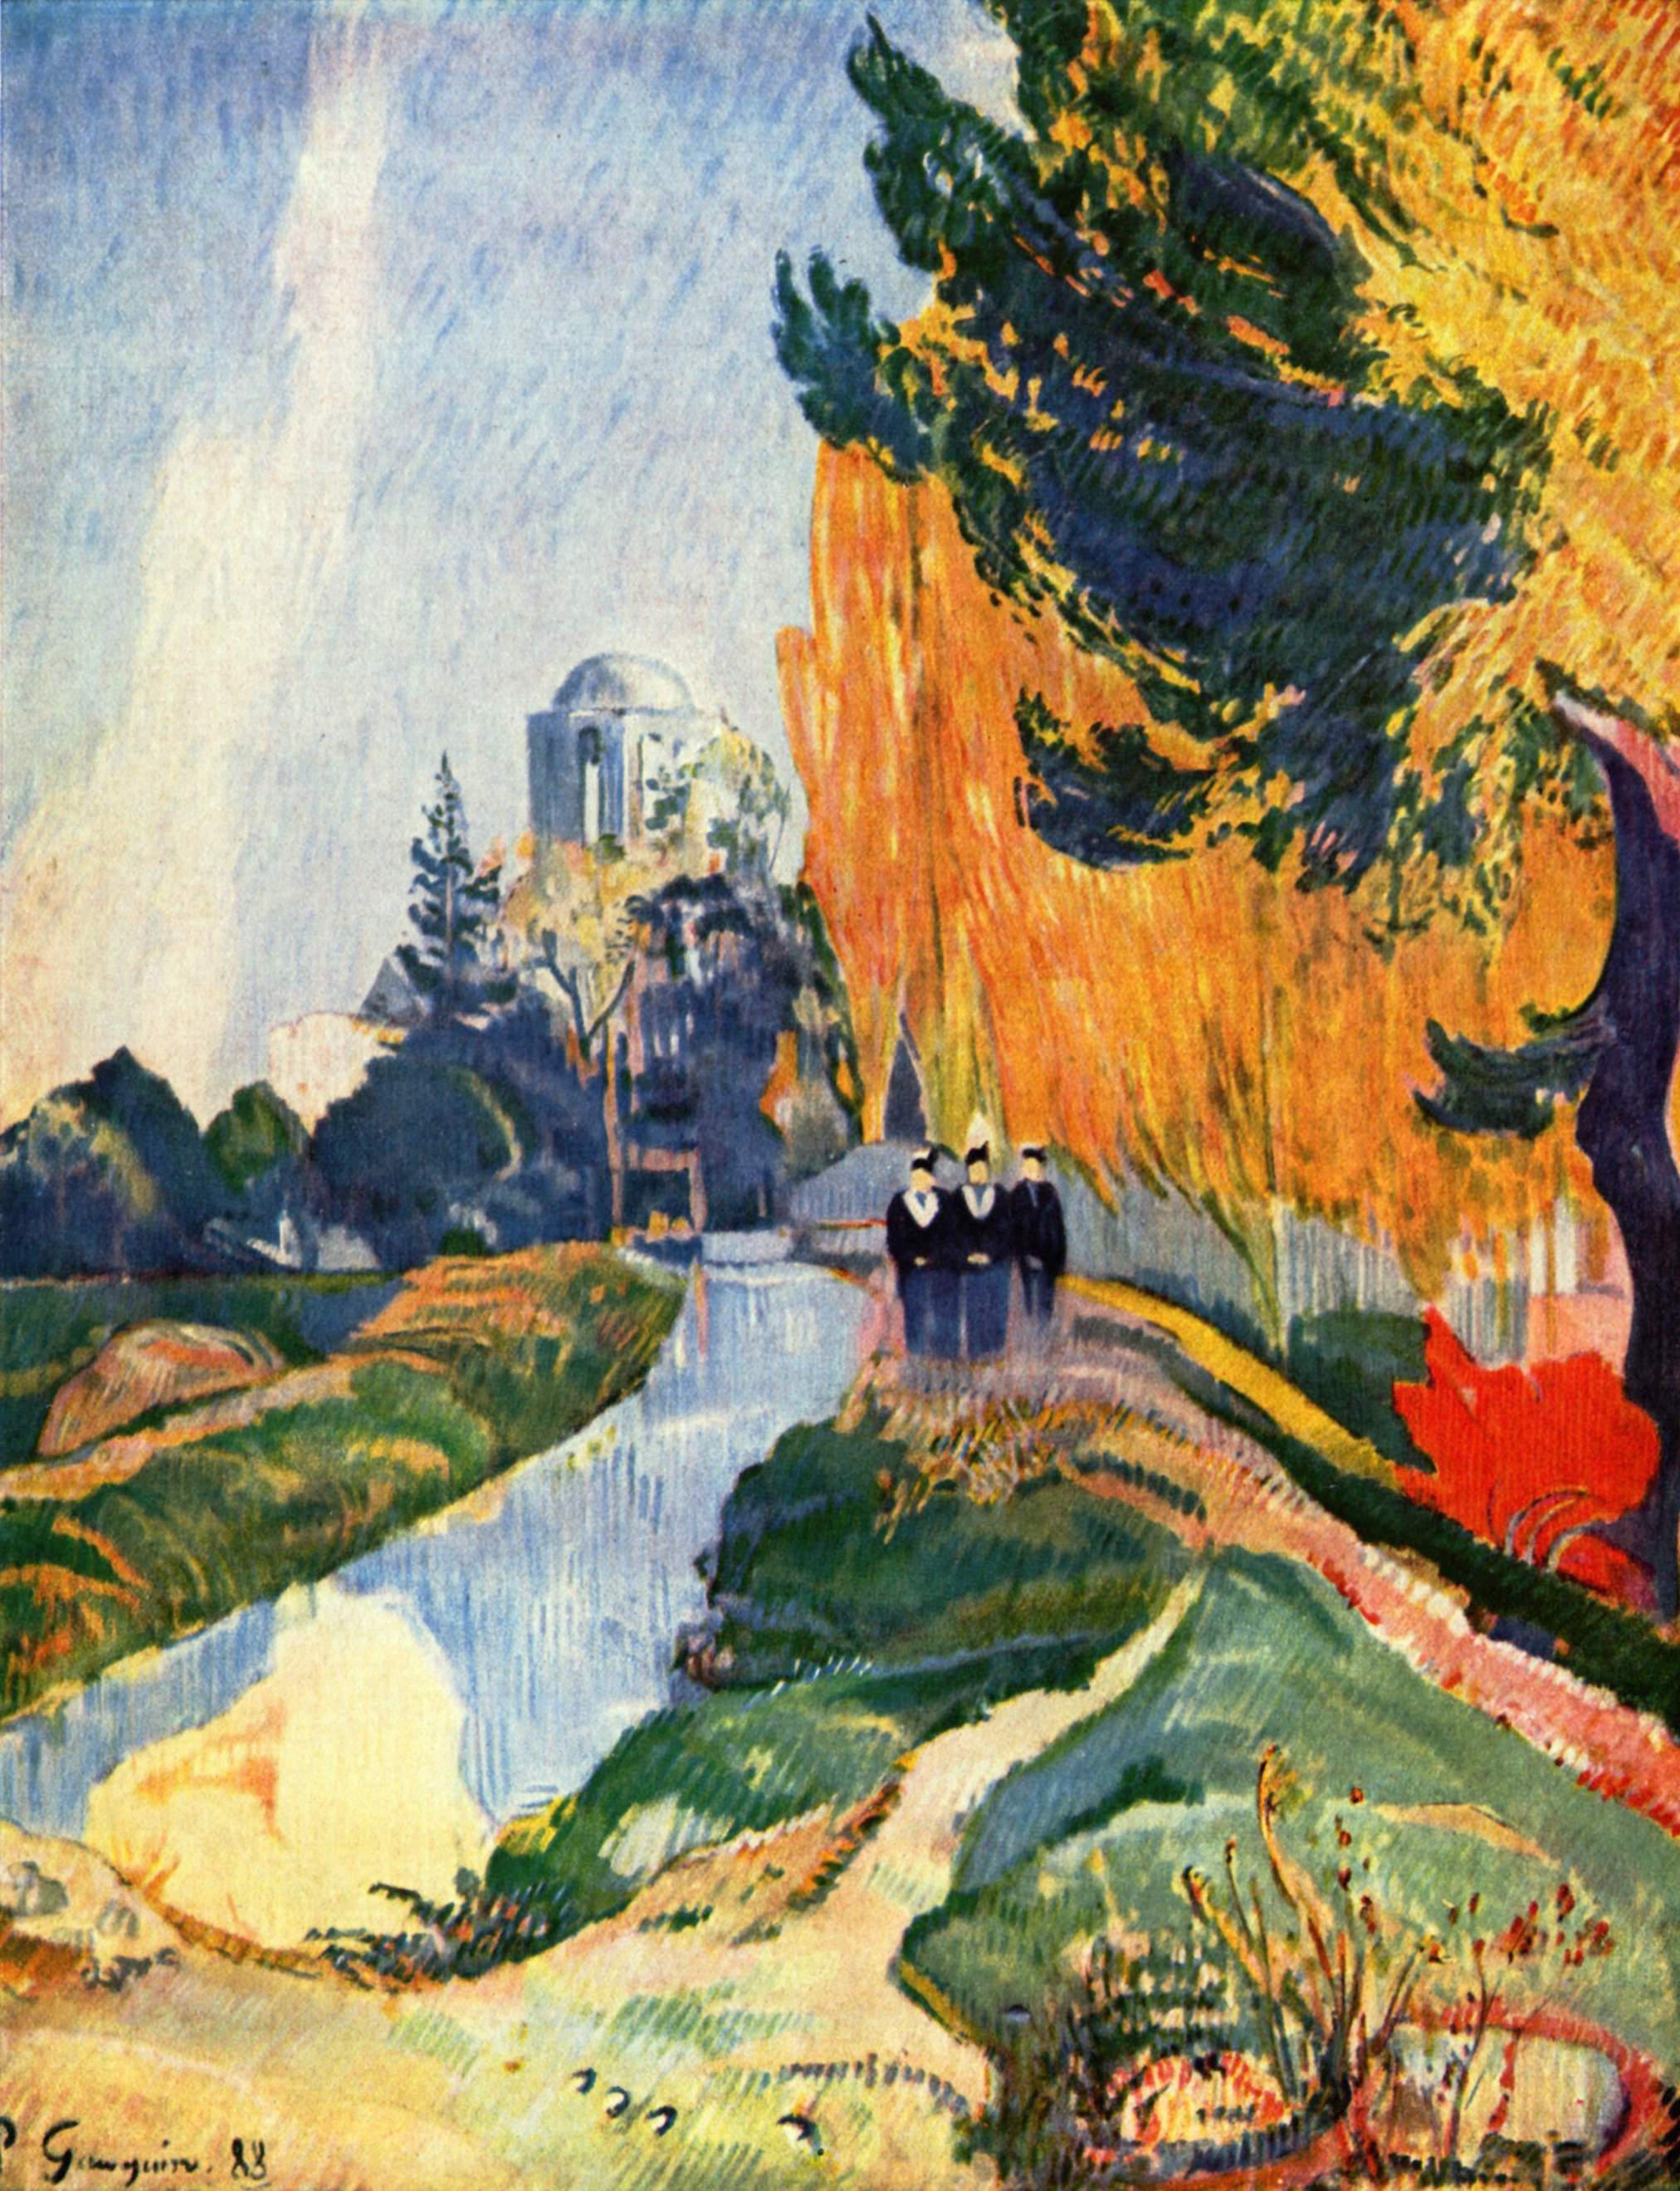 Les Alyscamps by Paul Gauguin - 1888 - 91,6 x 72,5 cm 